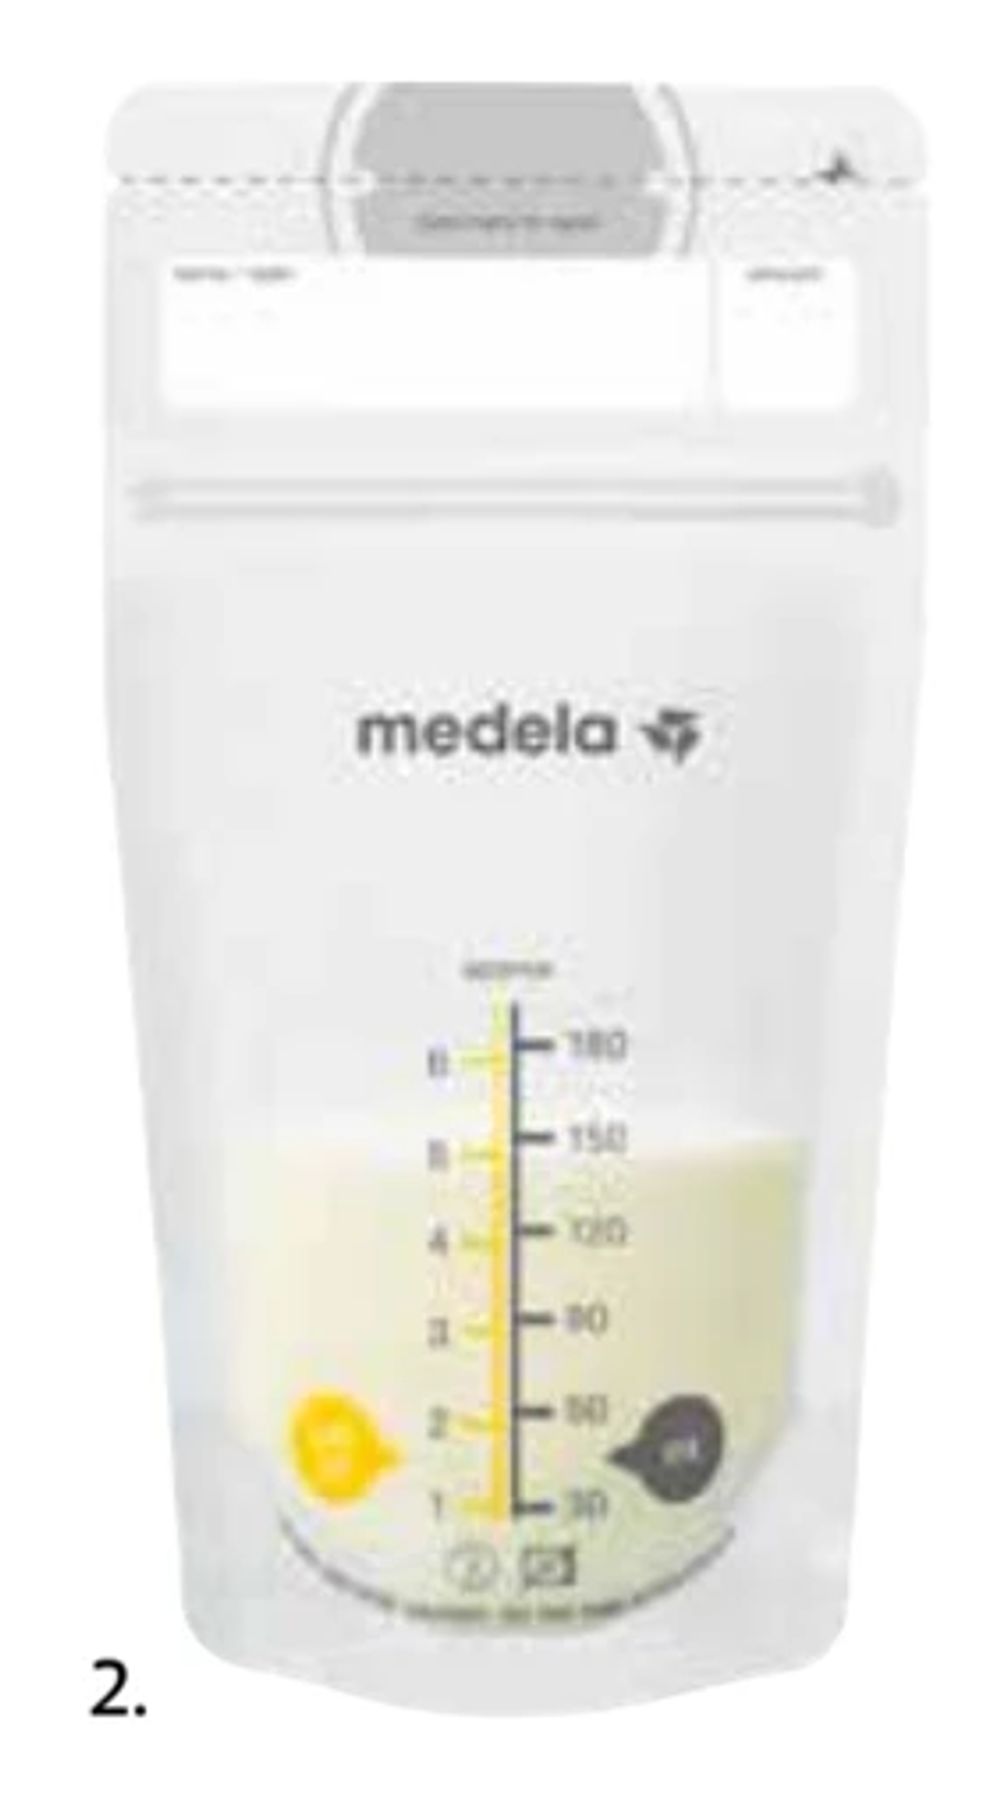 Tilbud på Medela oppbevarings poser for melk fra Apotek 1 til 105 kr